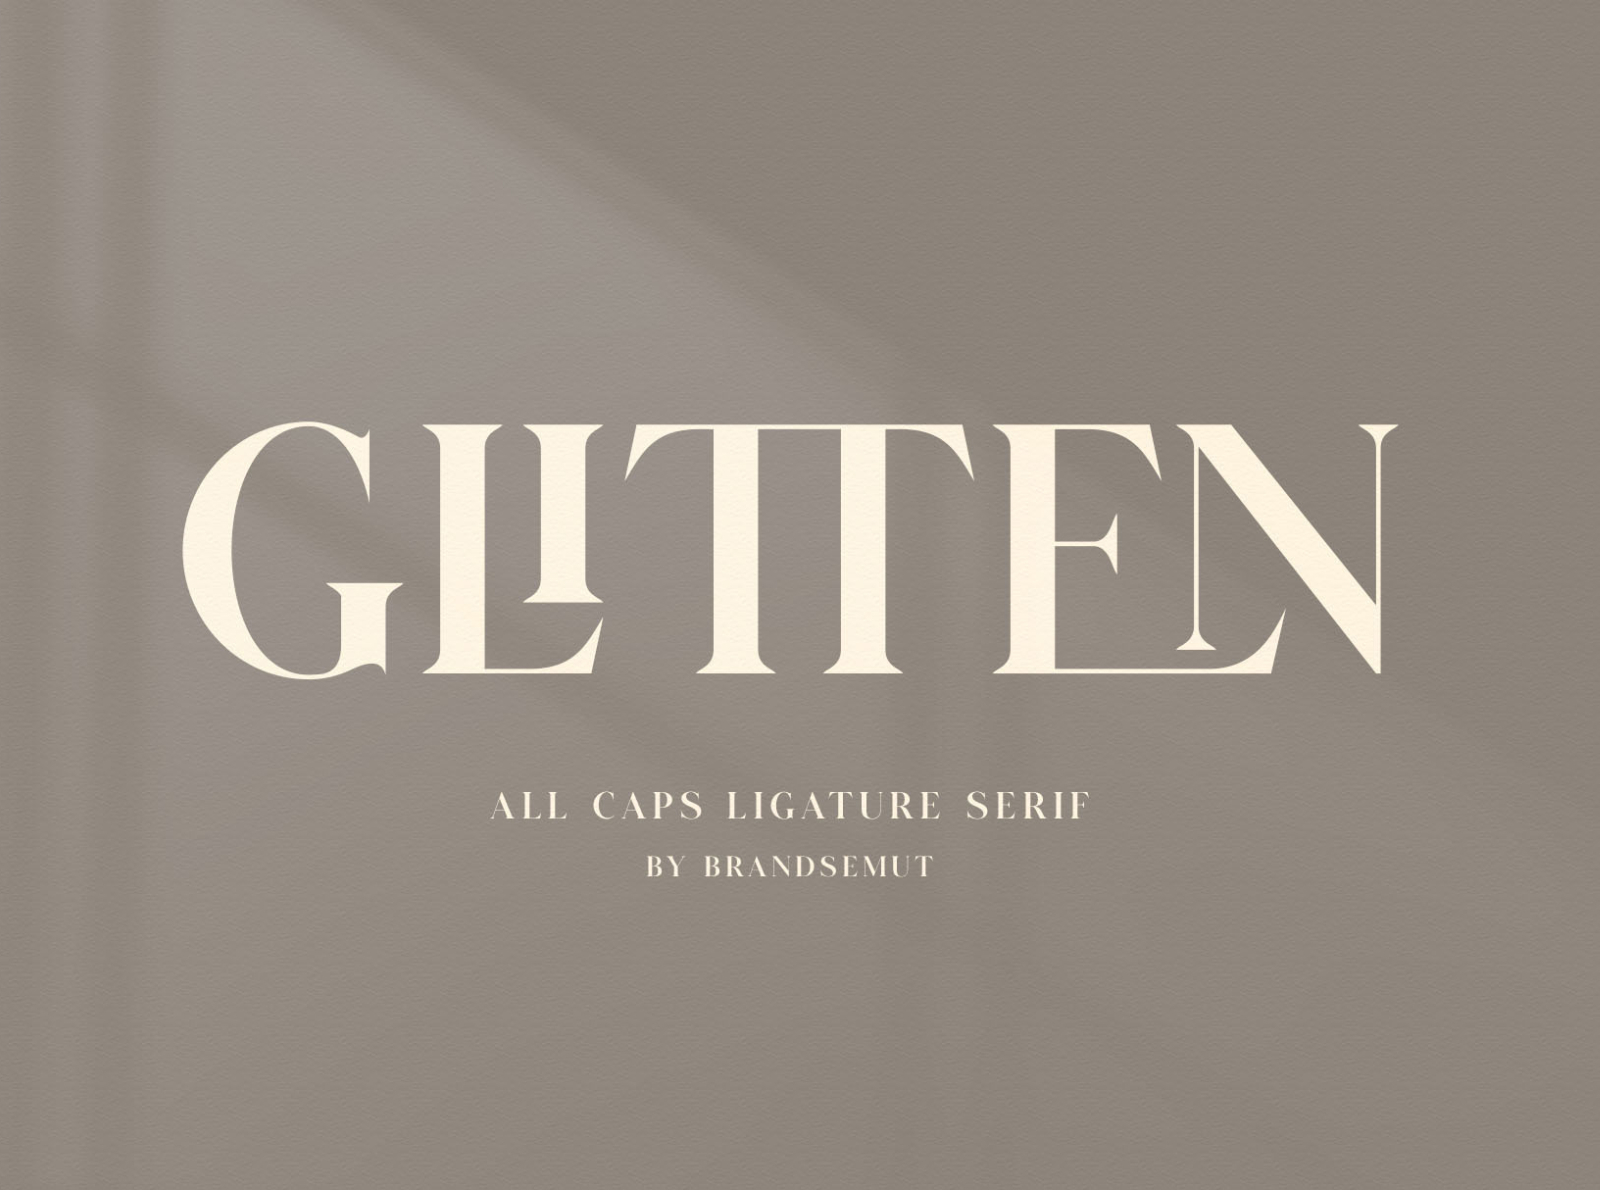 GLITTEN - All Caps Ligature Serif by Brand Semut on Dribbble